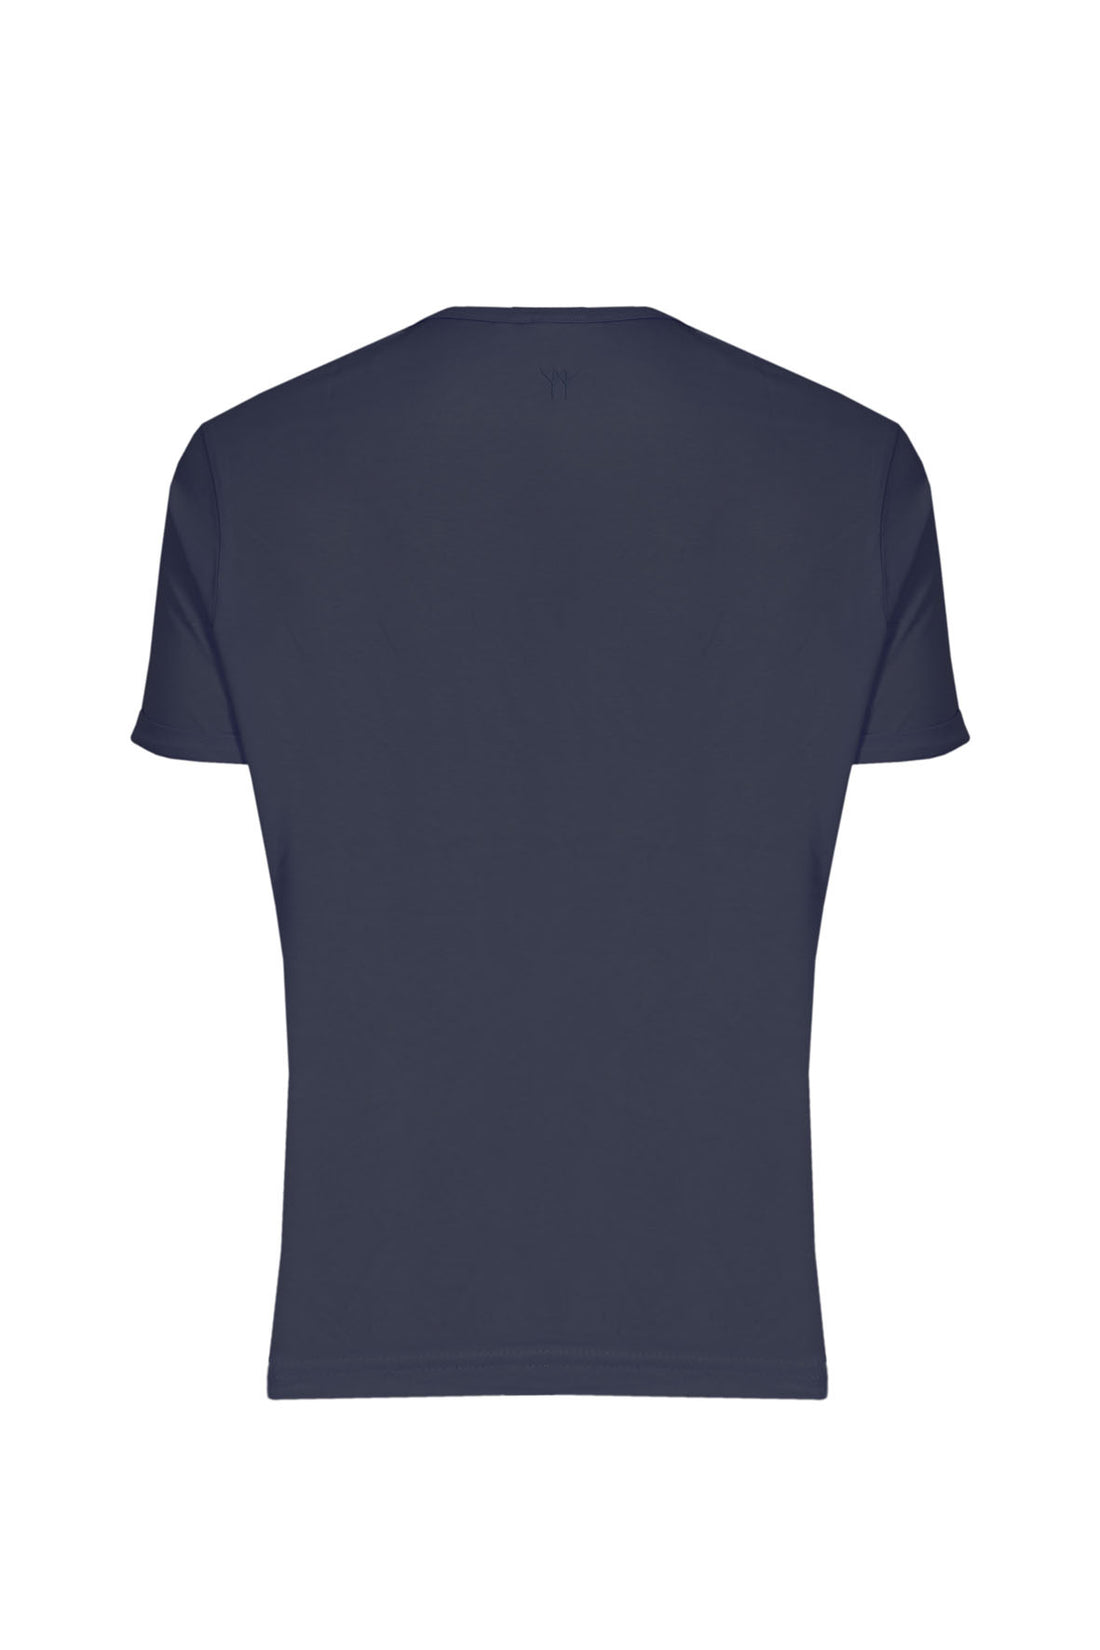 T-Shirt Mezza Manica Collo a Barca - Blue